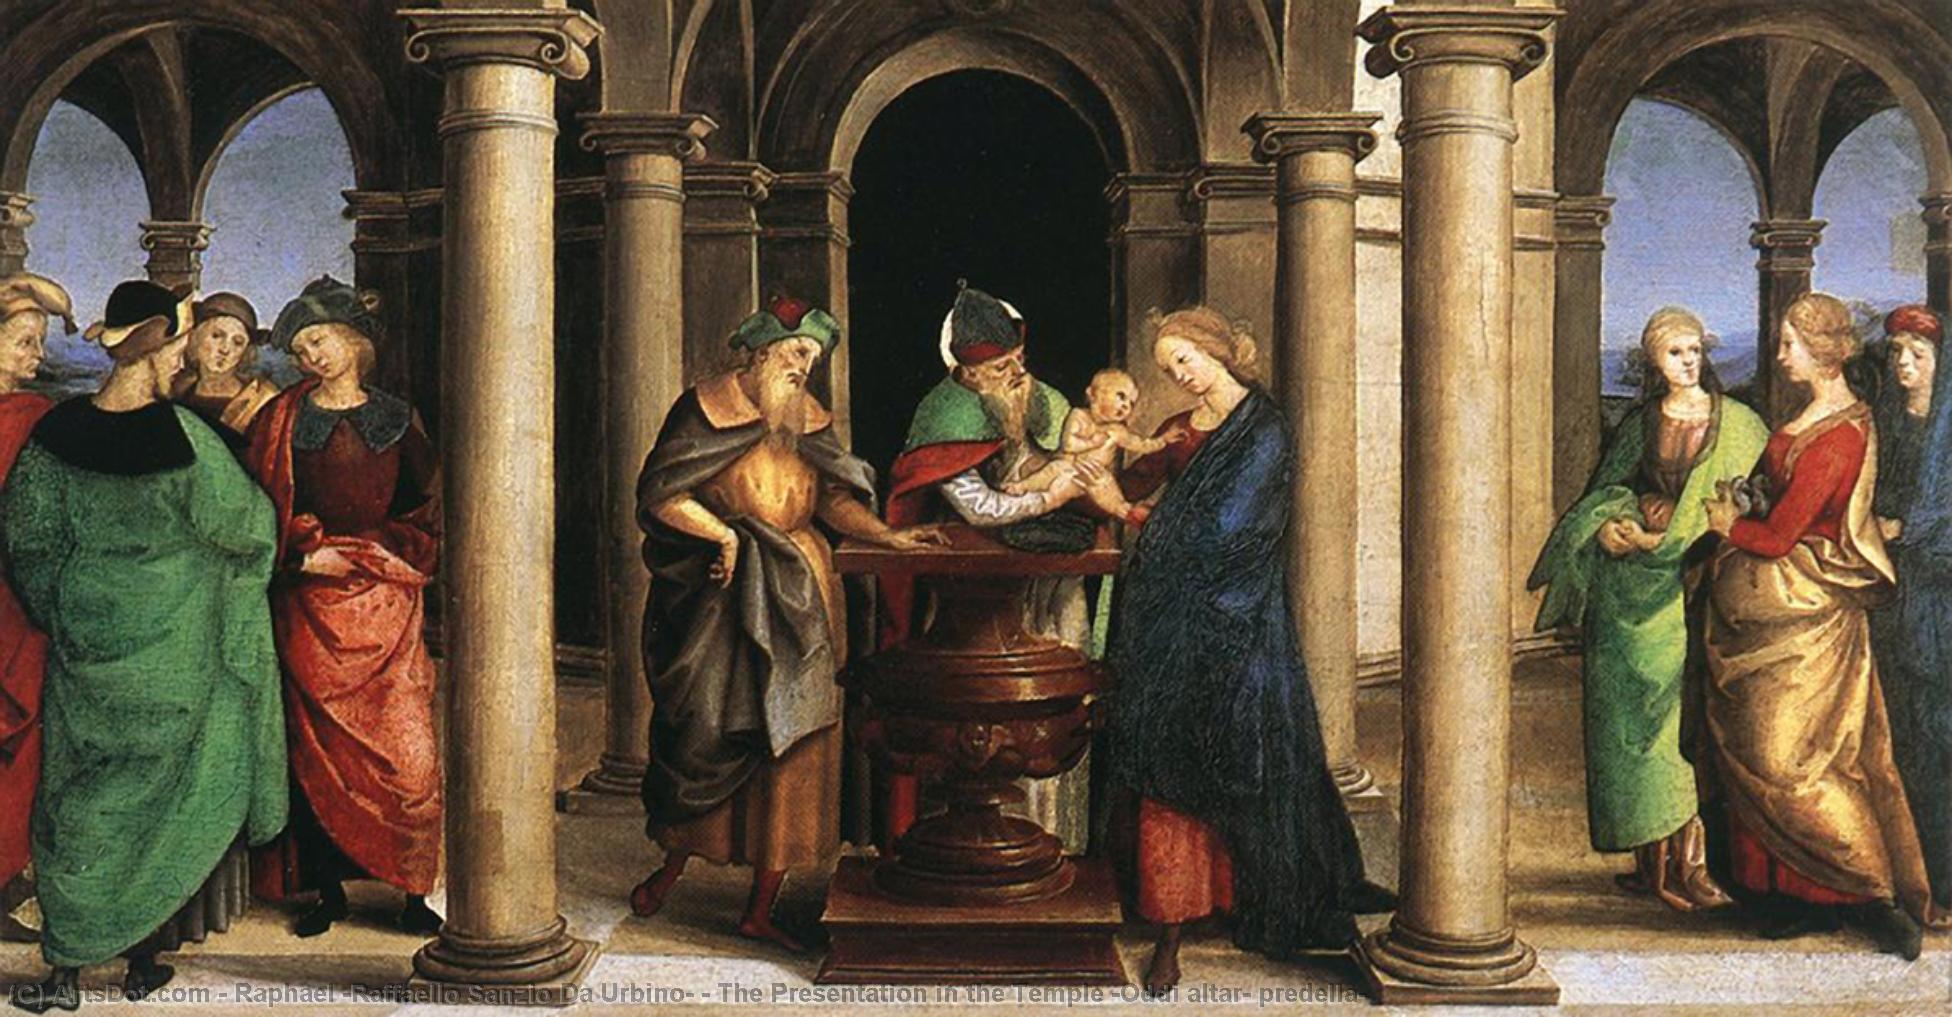 Wikioo.org - The Encyclopedia of Fine Arts - Painting, Artwork by Raphael (Raffaello Sanzio Da Urbino) - The Presentation in the Temple (Oddi altar, predella)